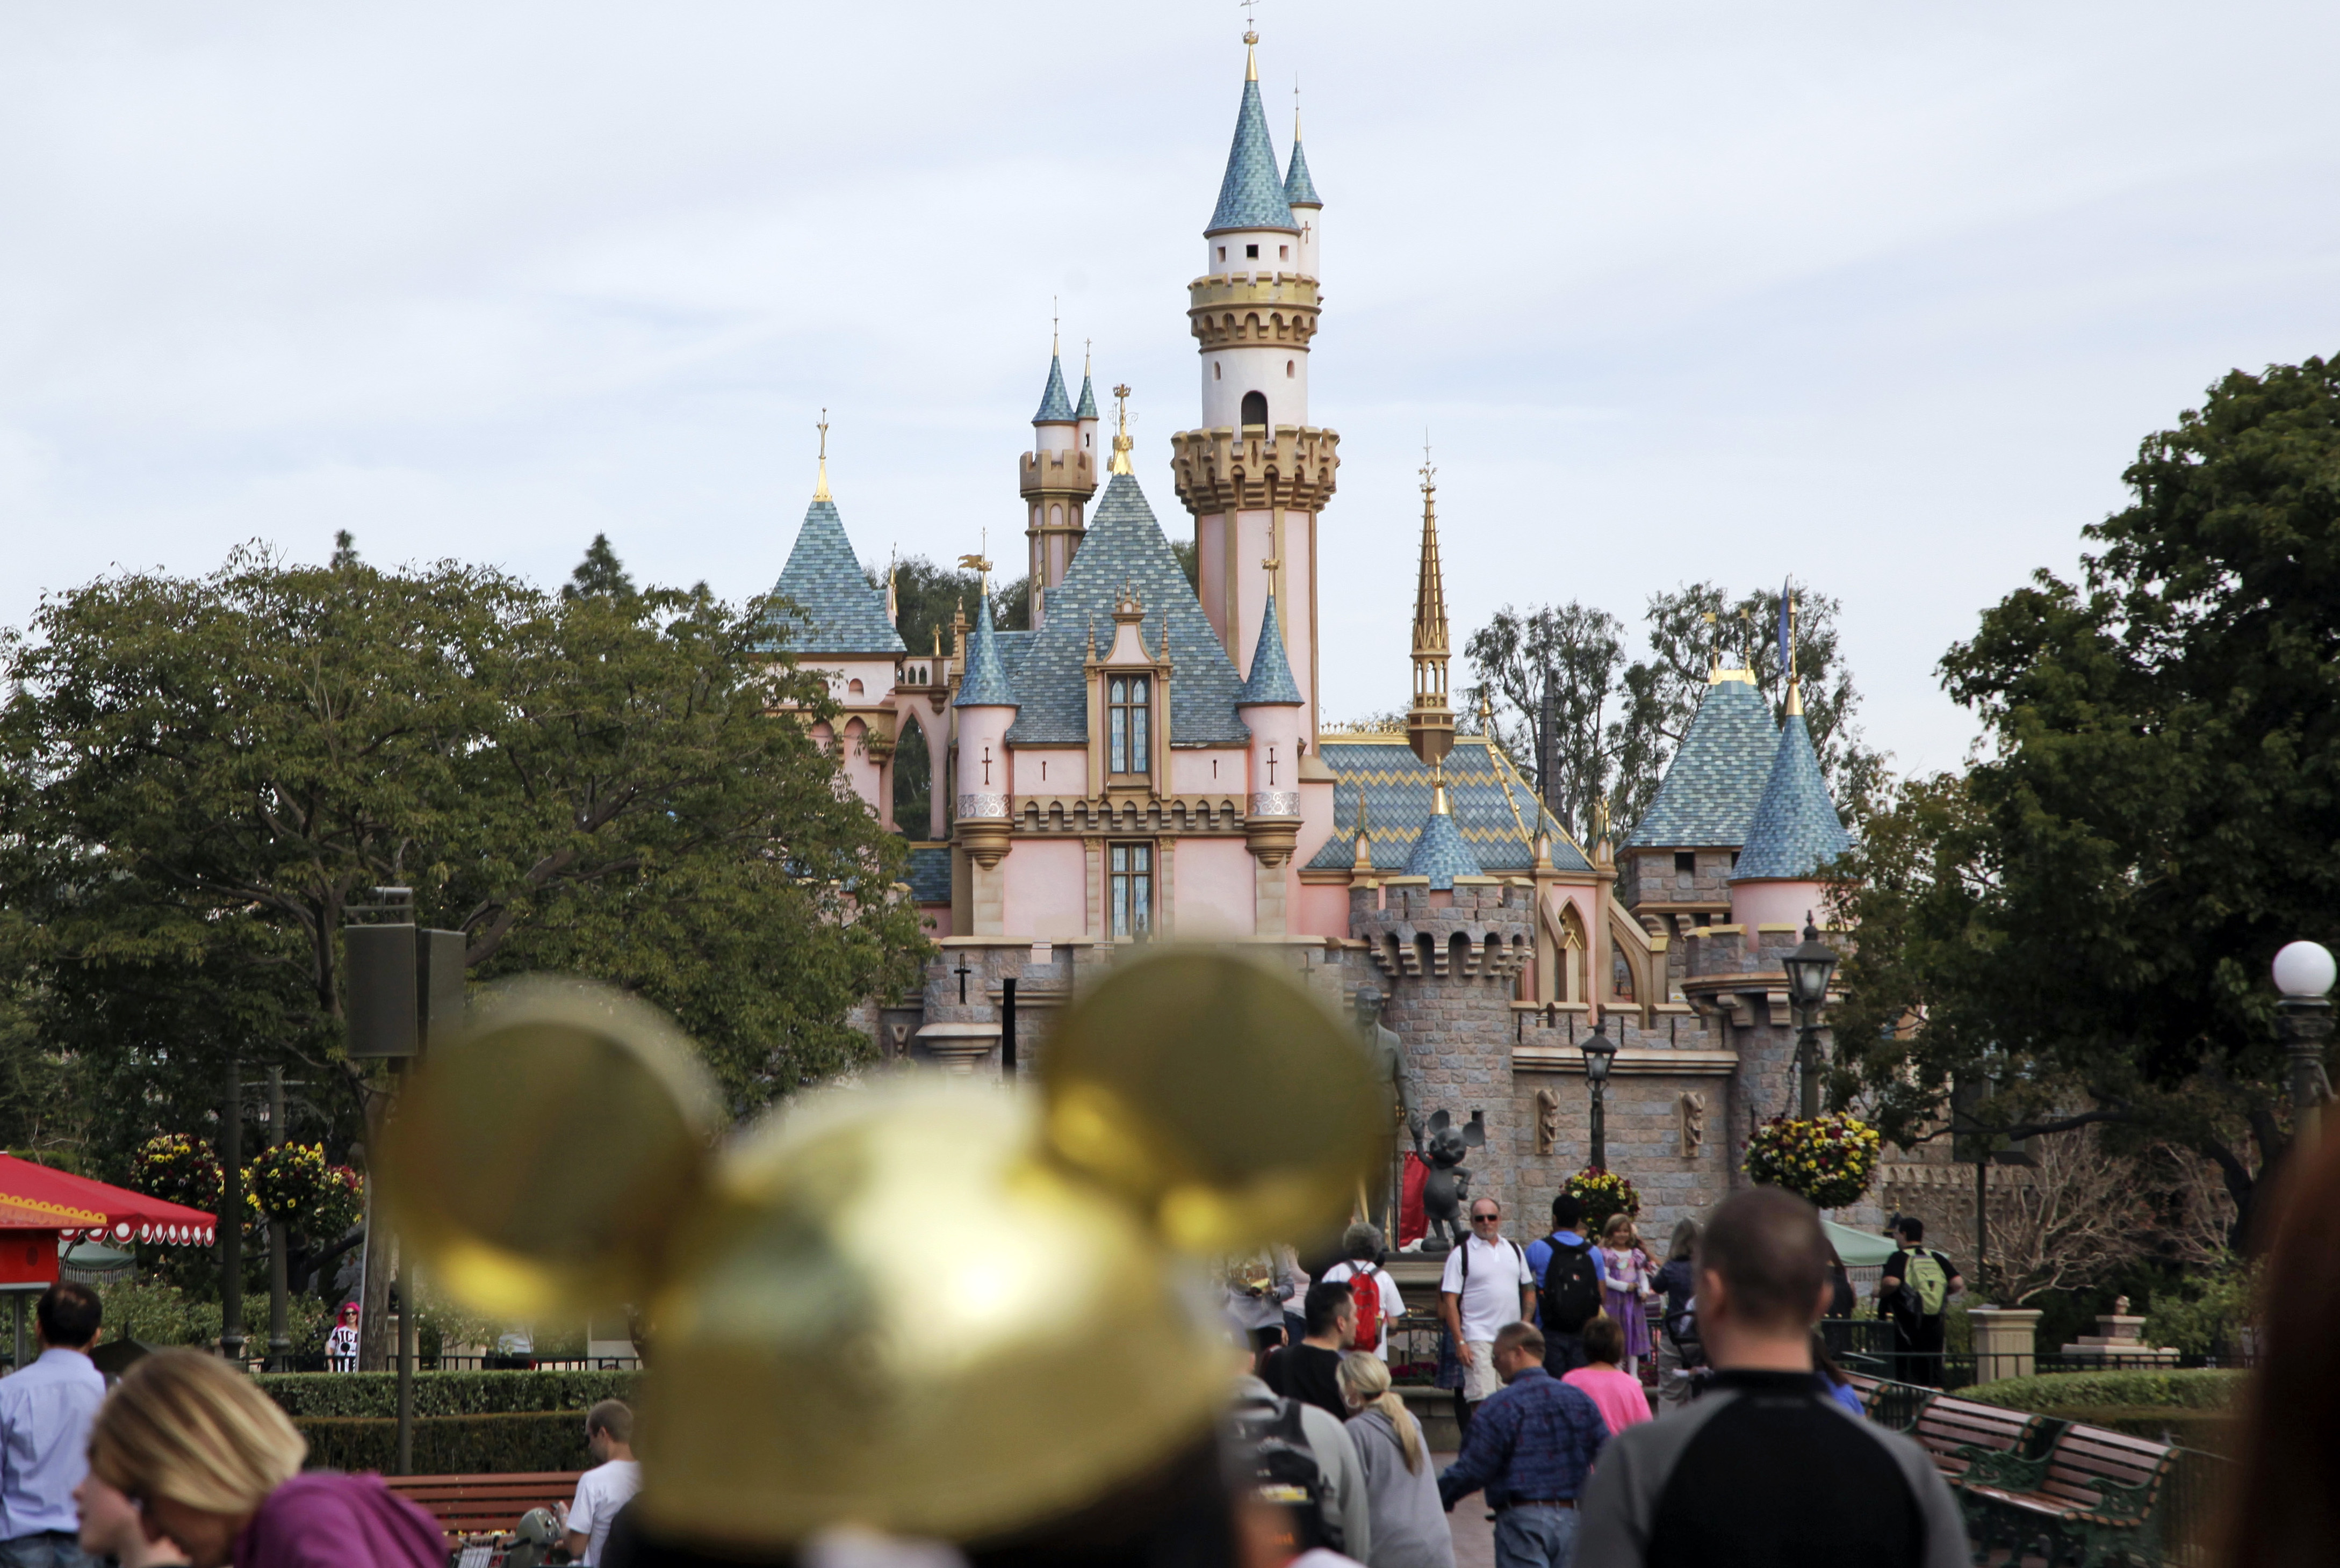 迪士尼（Disney）最赚钱的部门是拥有主题公园的体验部门，为了保持优势不坠，迪士尼打算未来十年加强投资600亿美元。美联社